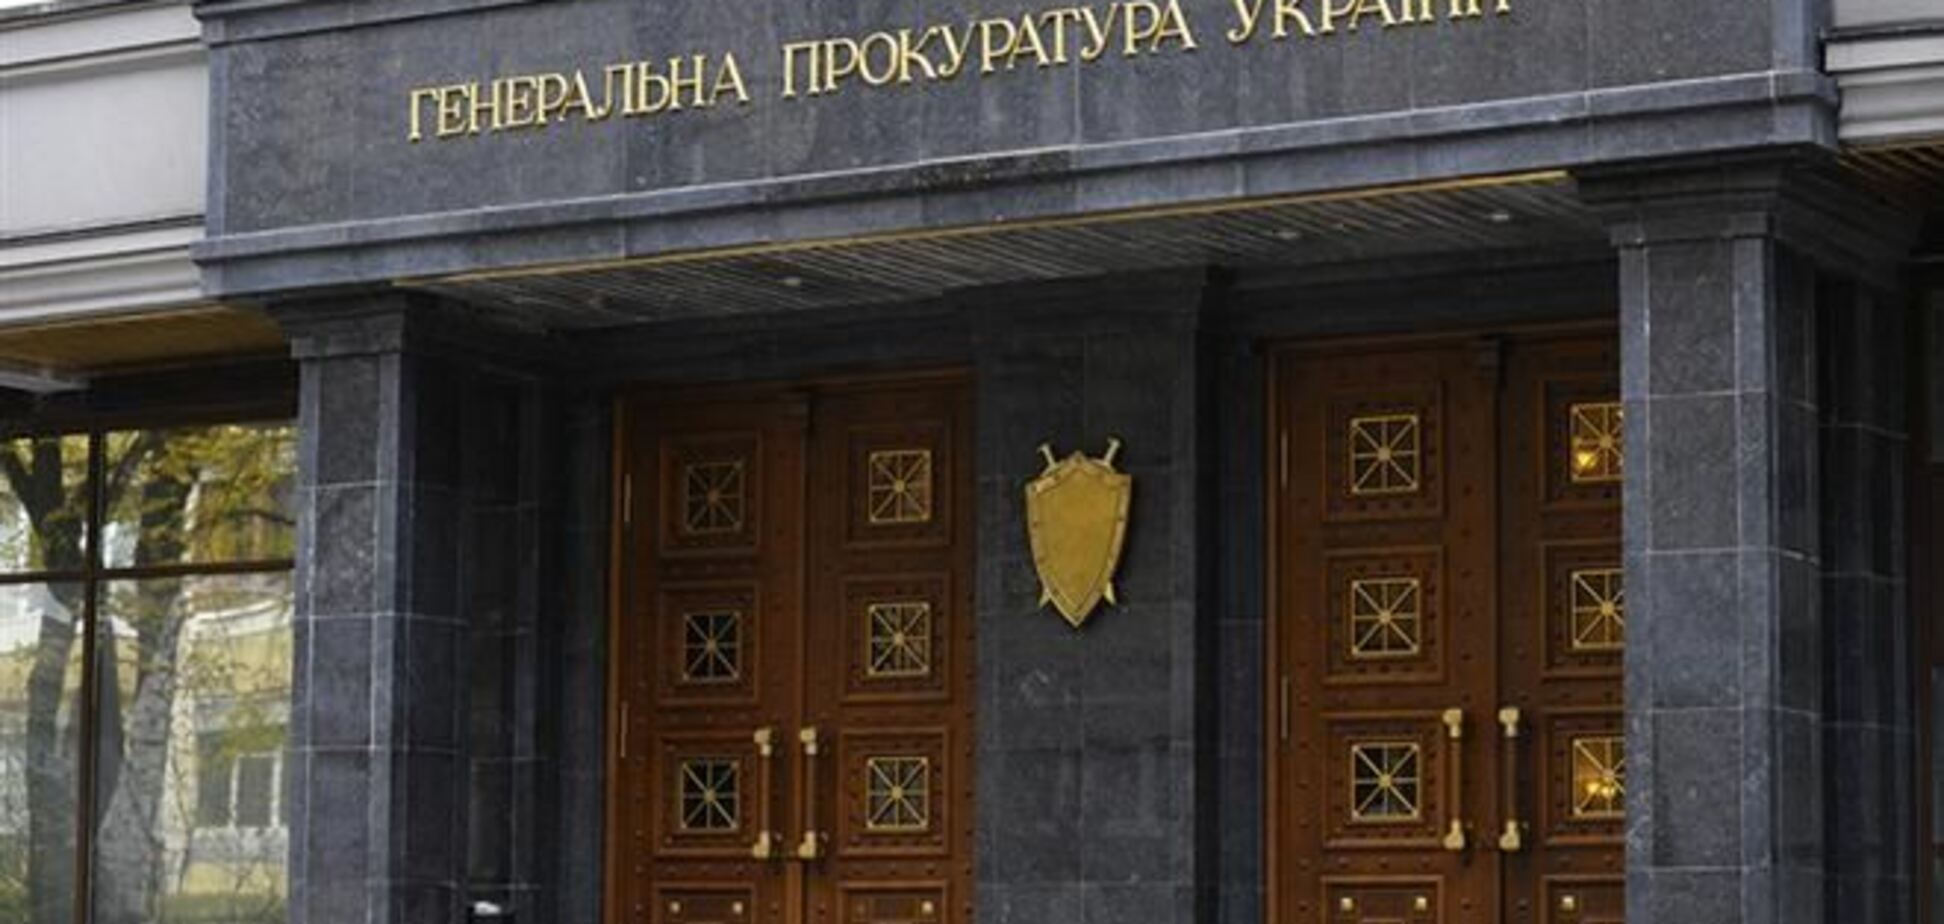 'Смотрящий' Анисимов организовал 'титушек' для охраны побега Януковича